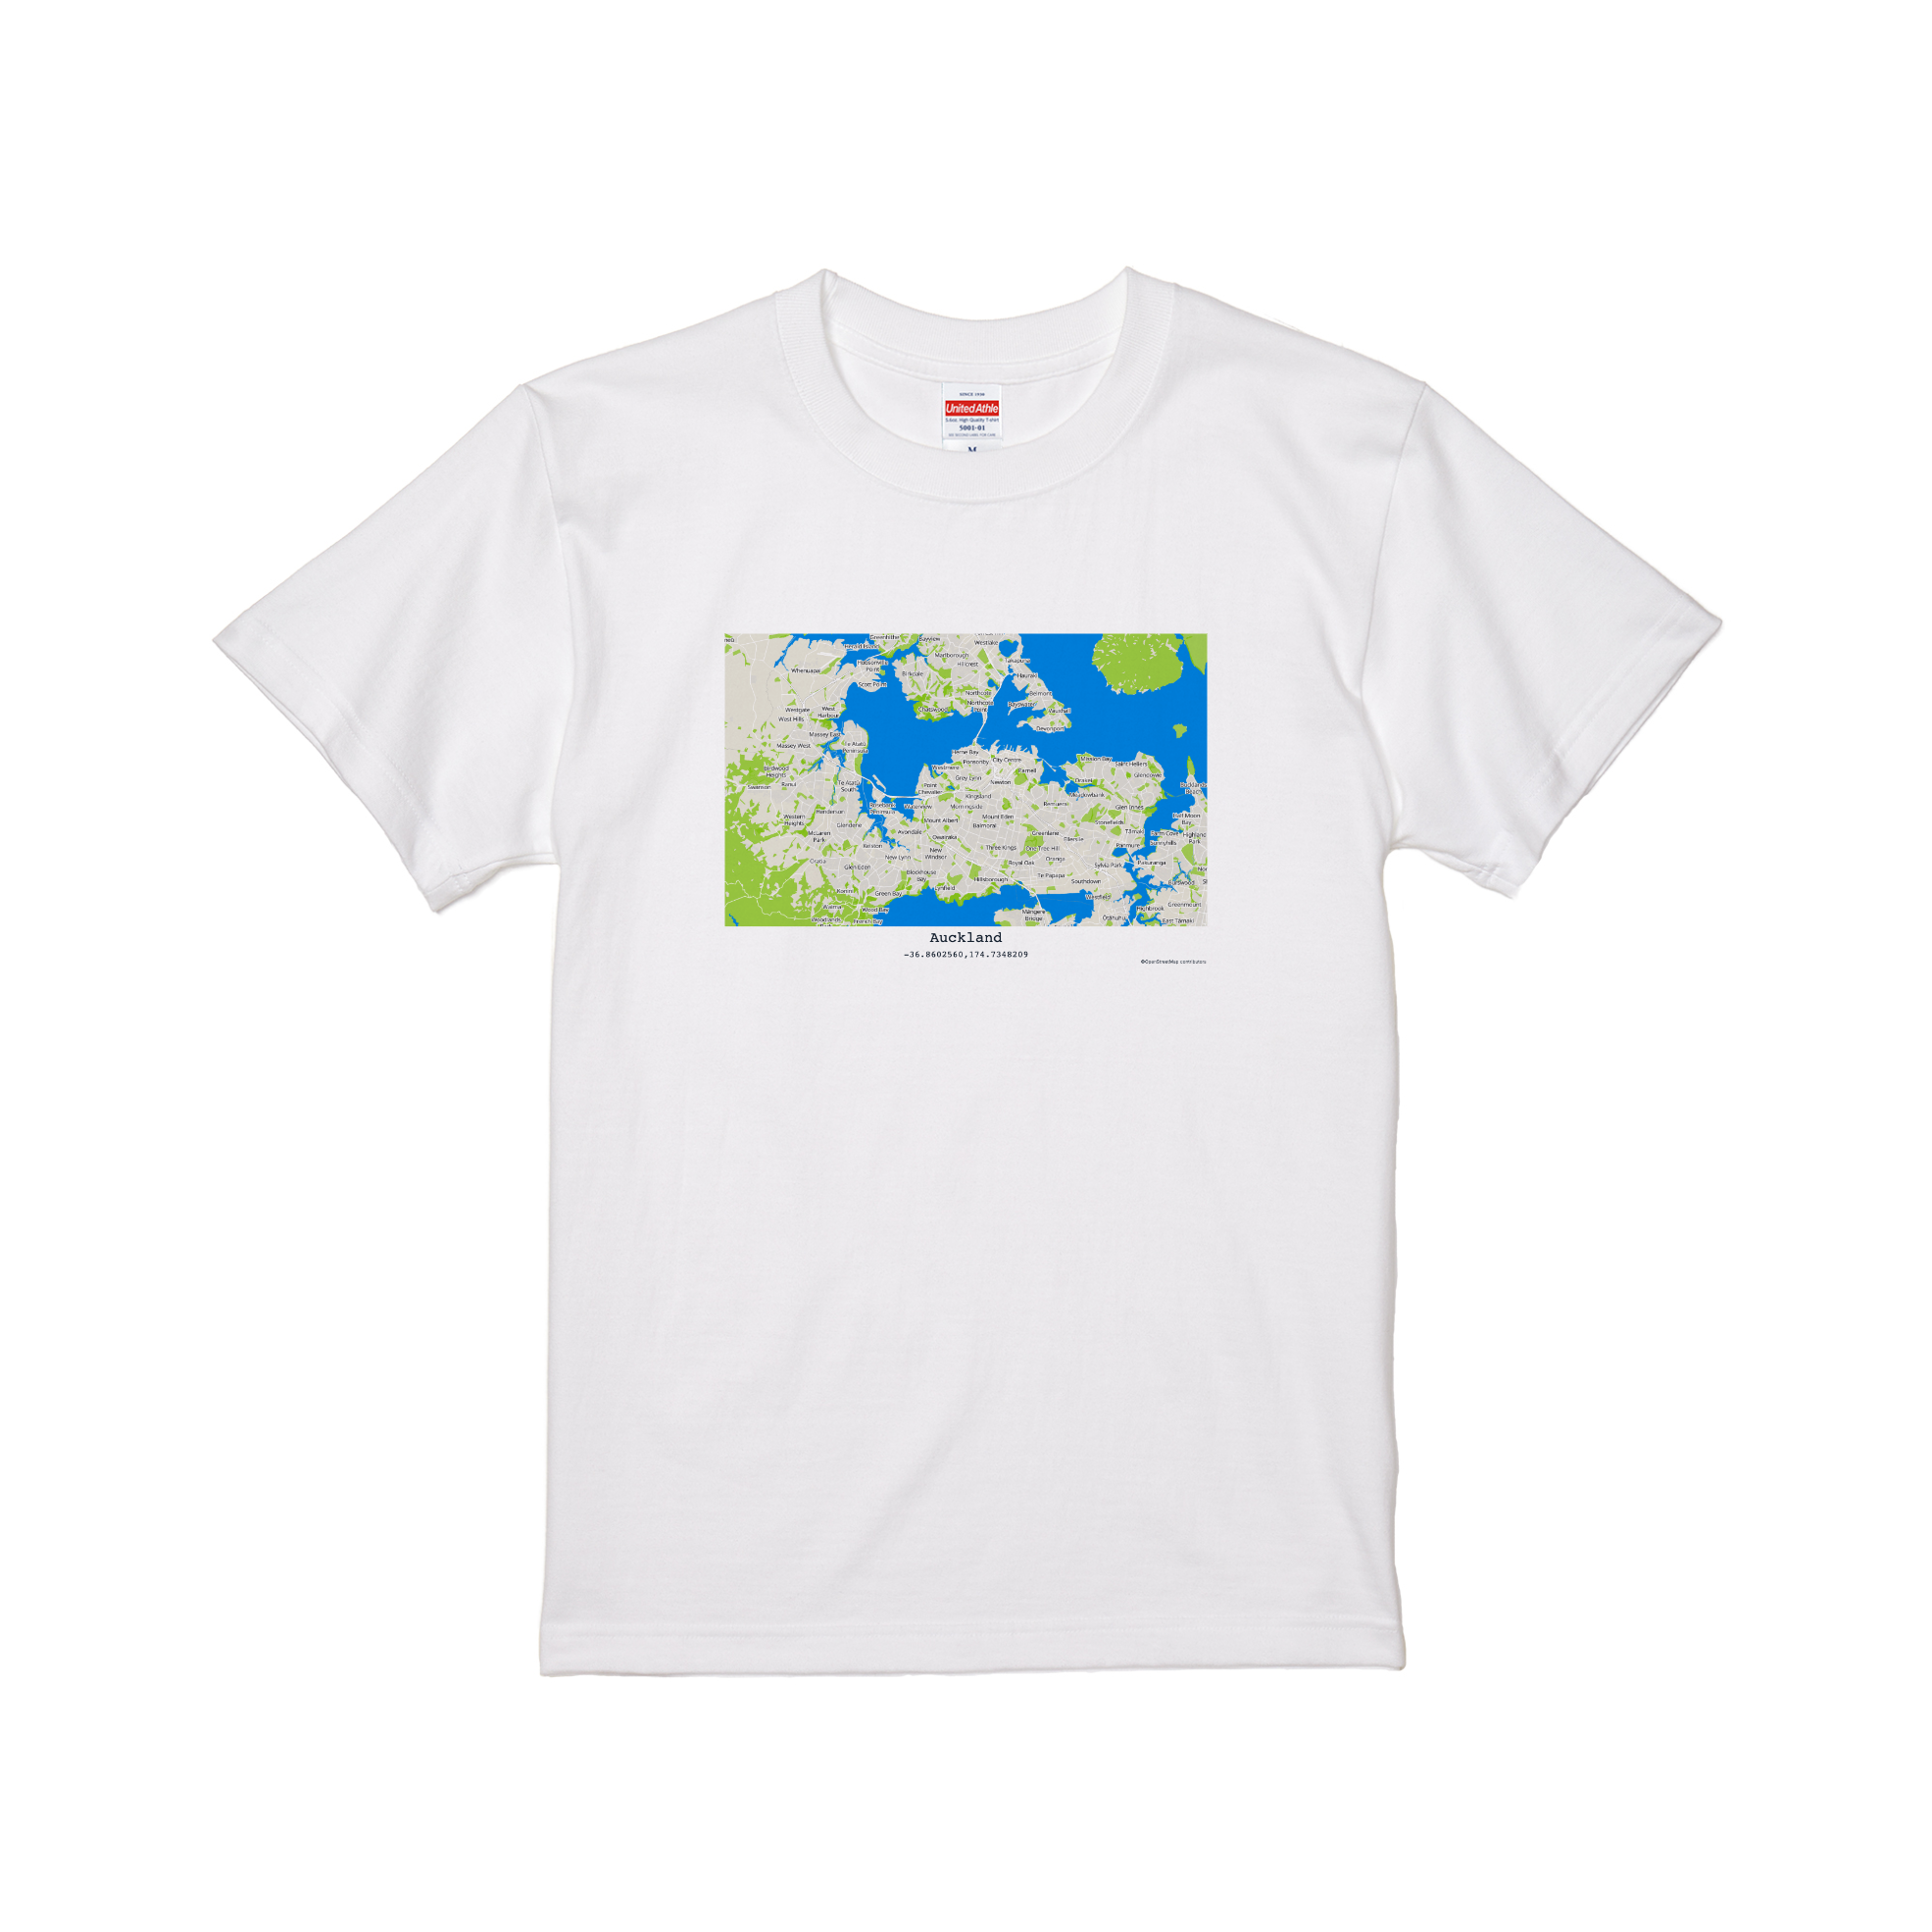 Auckland Map T-shirt